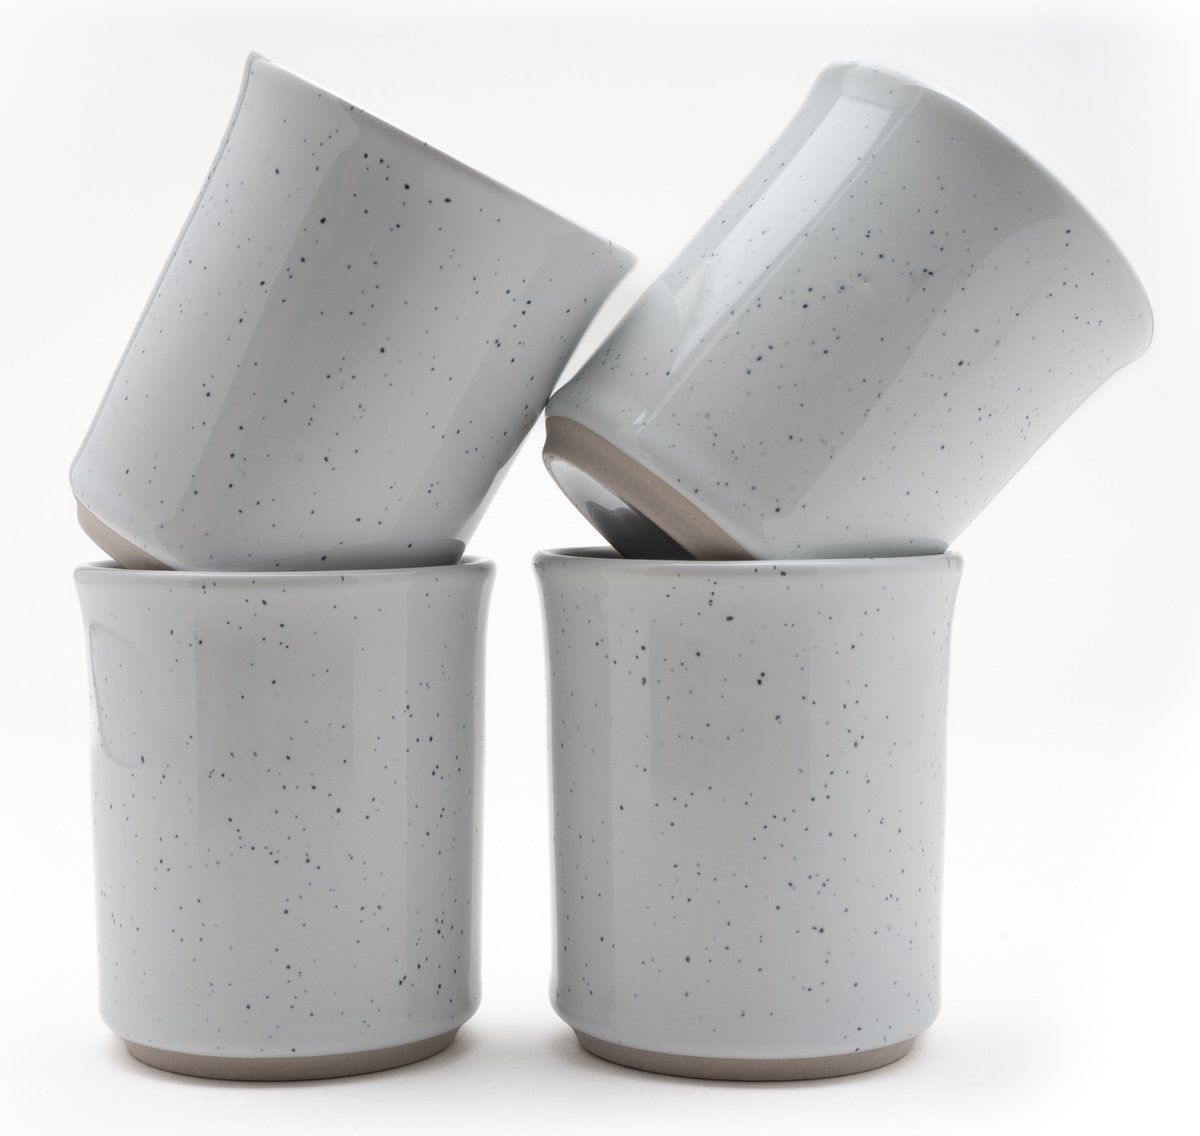 Koffiekopjes - koffiemok - koffiebeker - set van 4 kopjes - 150ML - keramiek - hip en trendy - kado voor hem & haar - wit